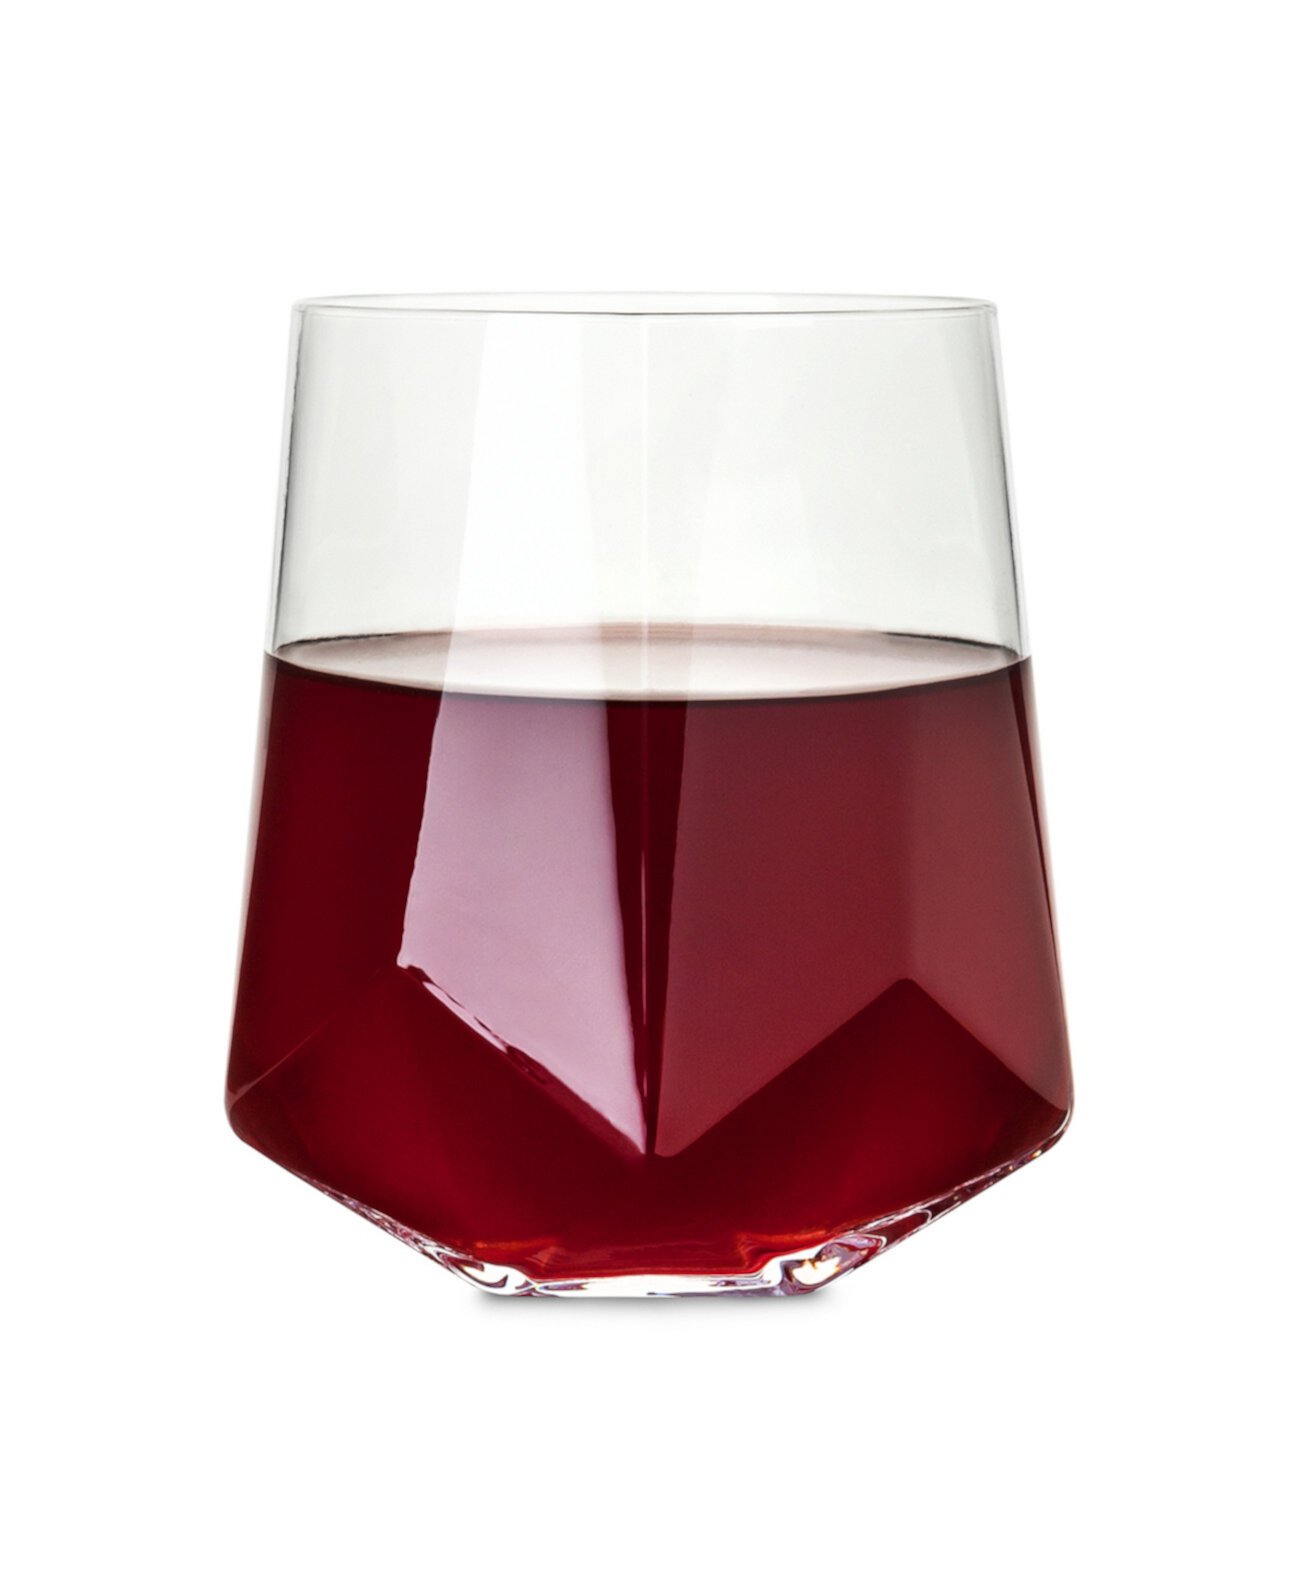 Граненый хрустальный бокал для вина Raye, набор из 2 шт. Viski